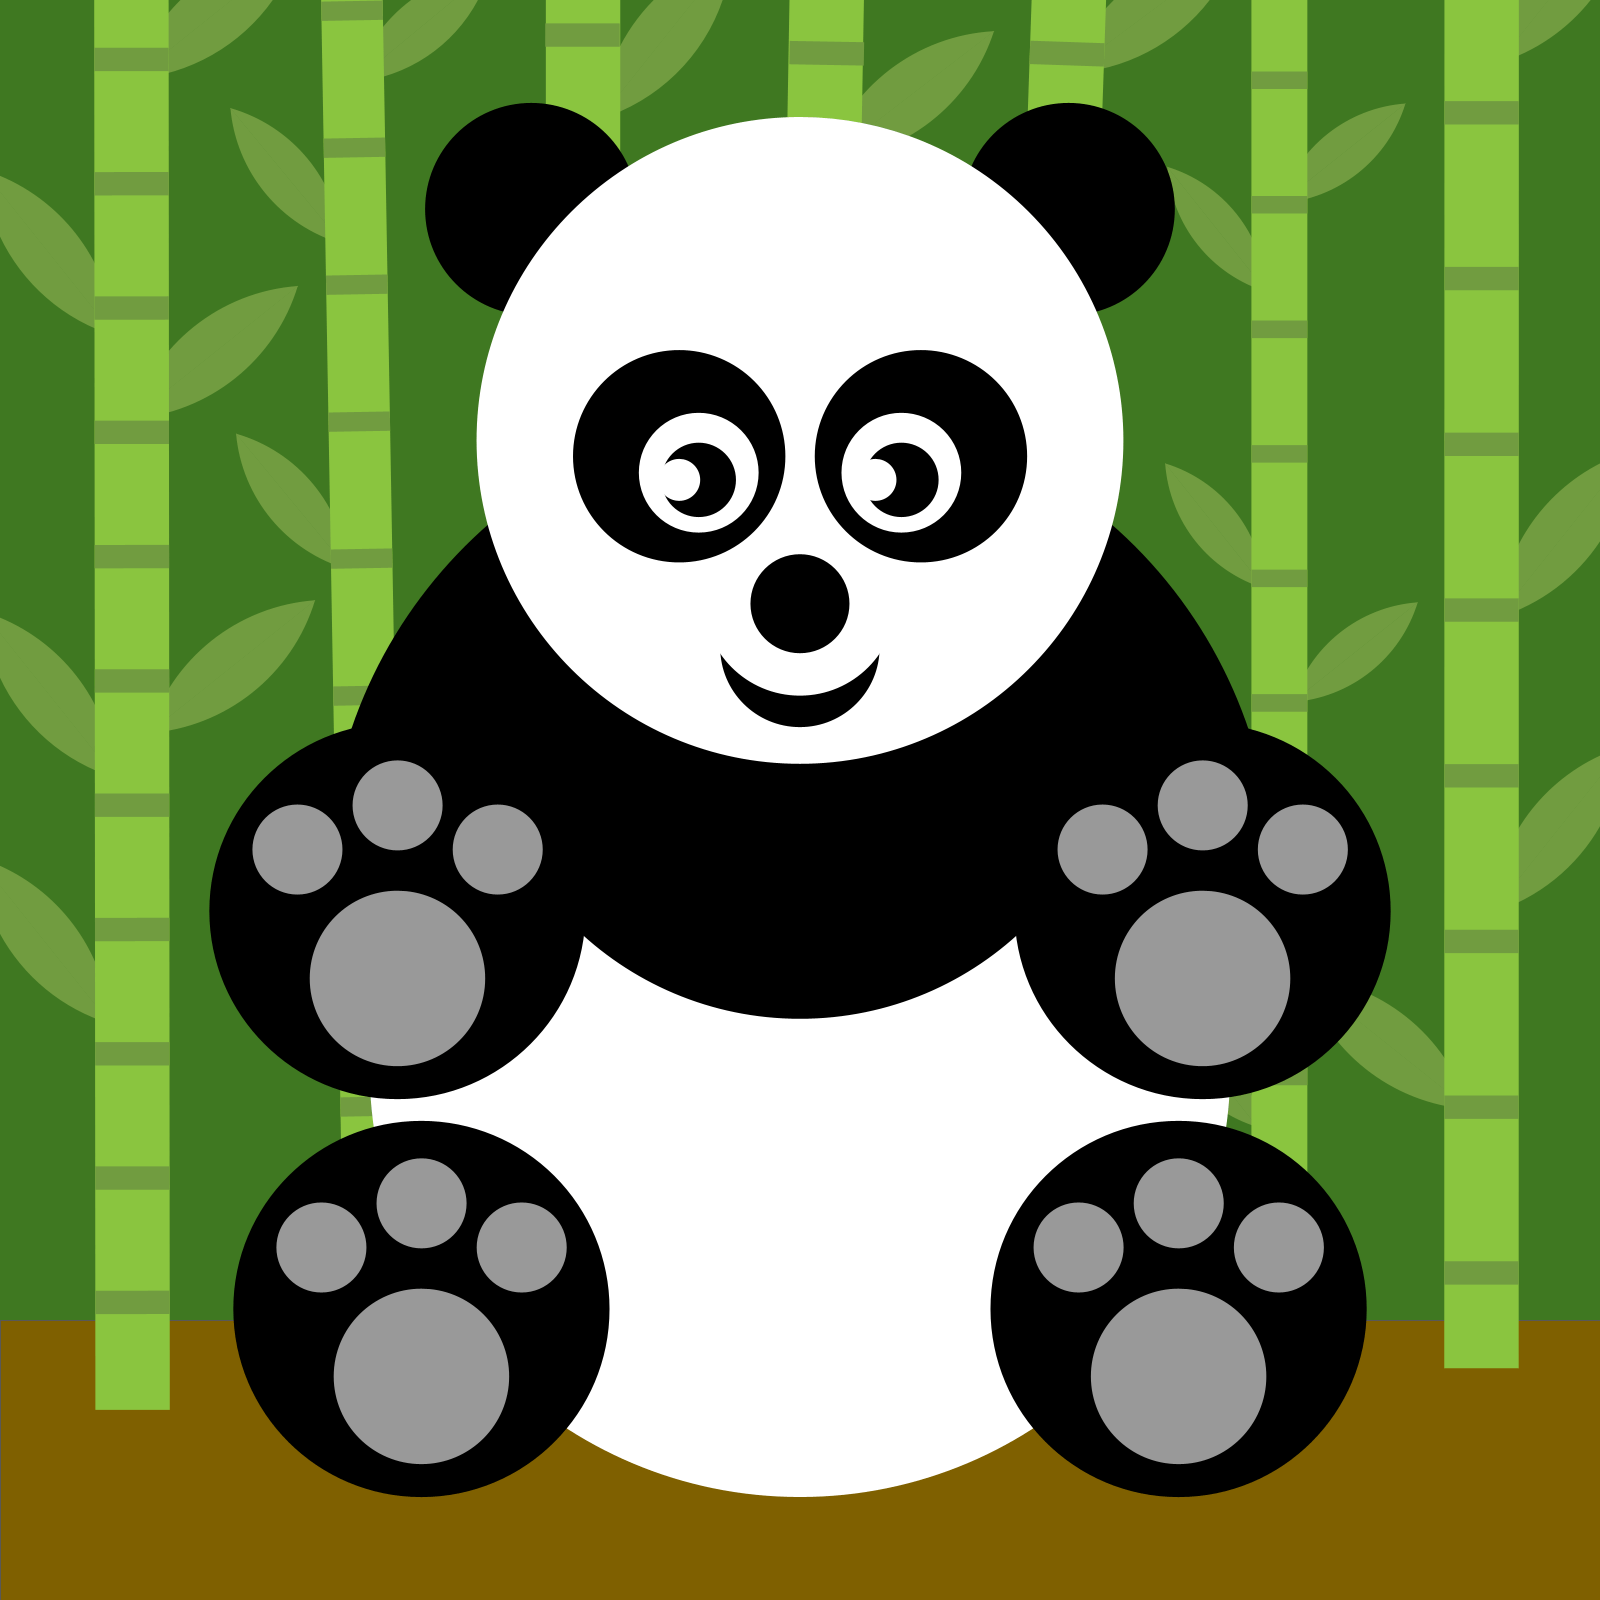 Drawing of a panda drawn with circles